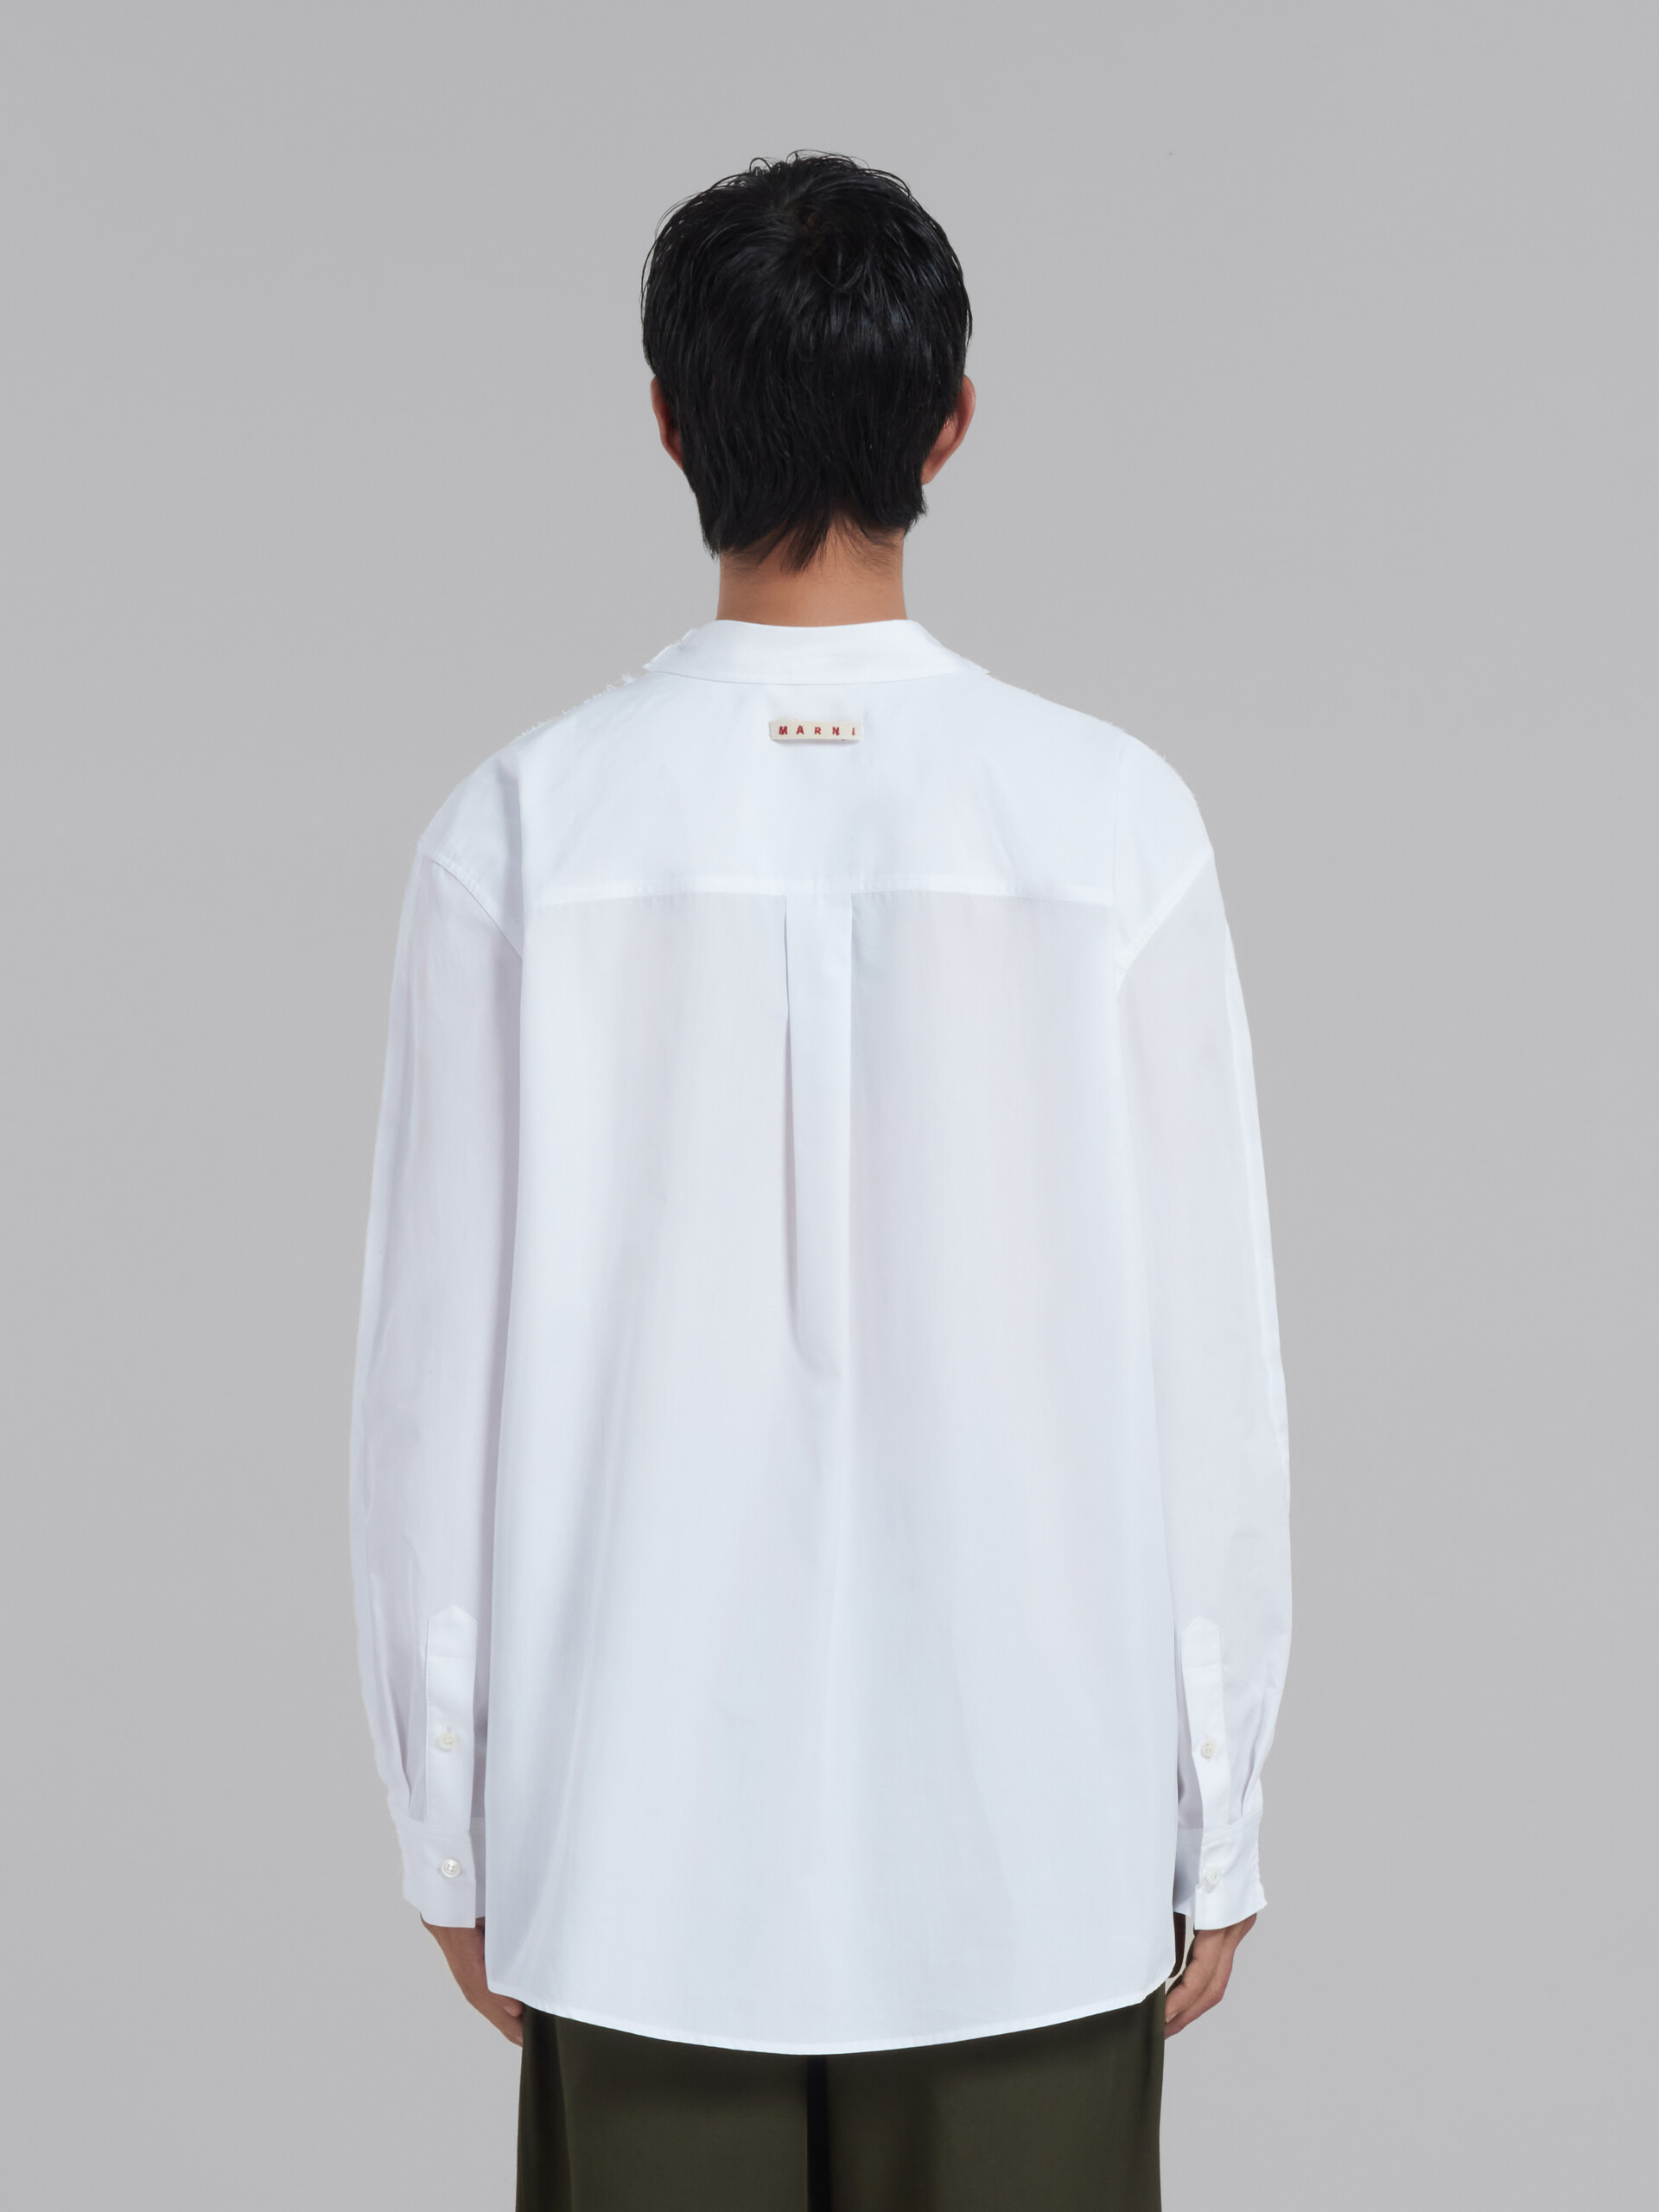 Camiseta de manga larga blanca de algodón ecológico con canesú en la parte trasera - Camisetas - Image 3